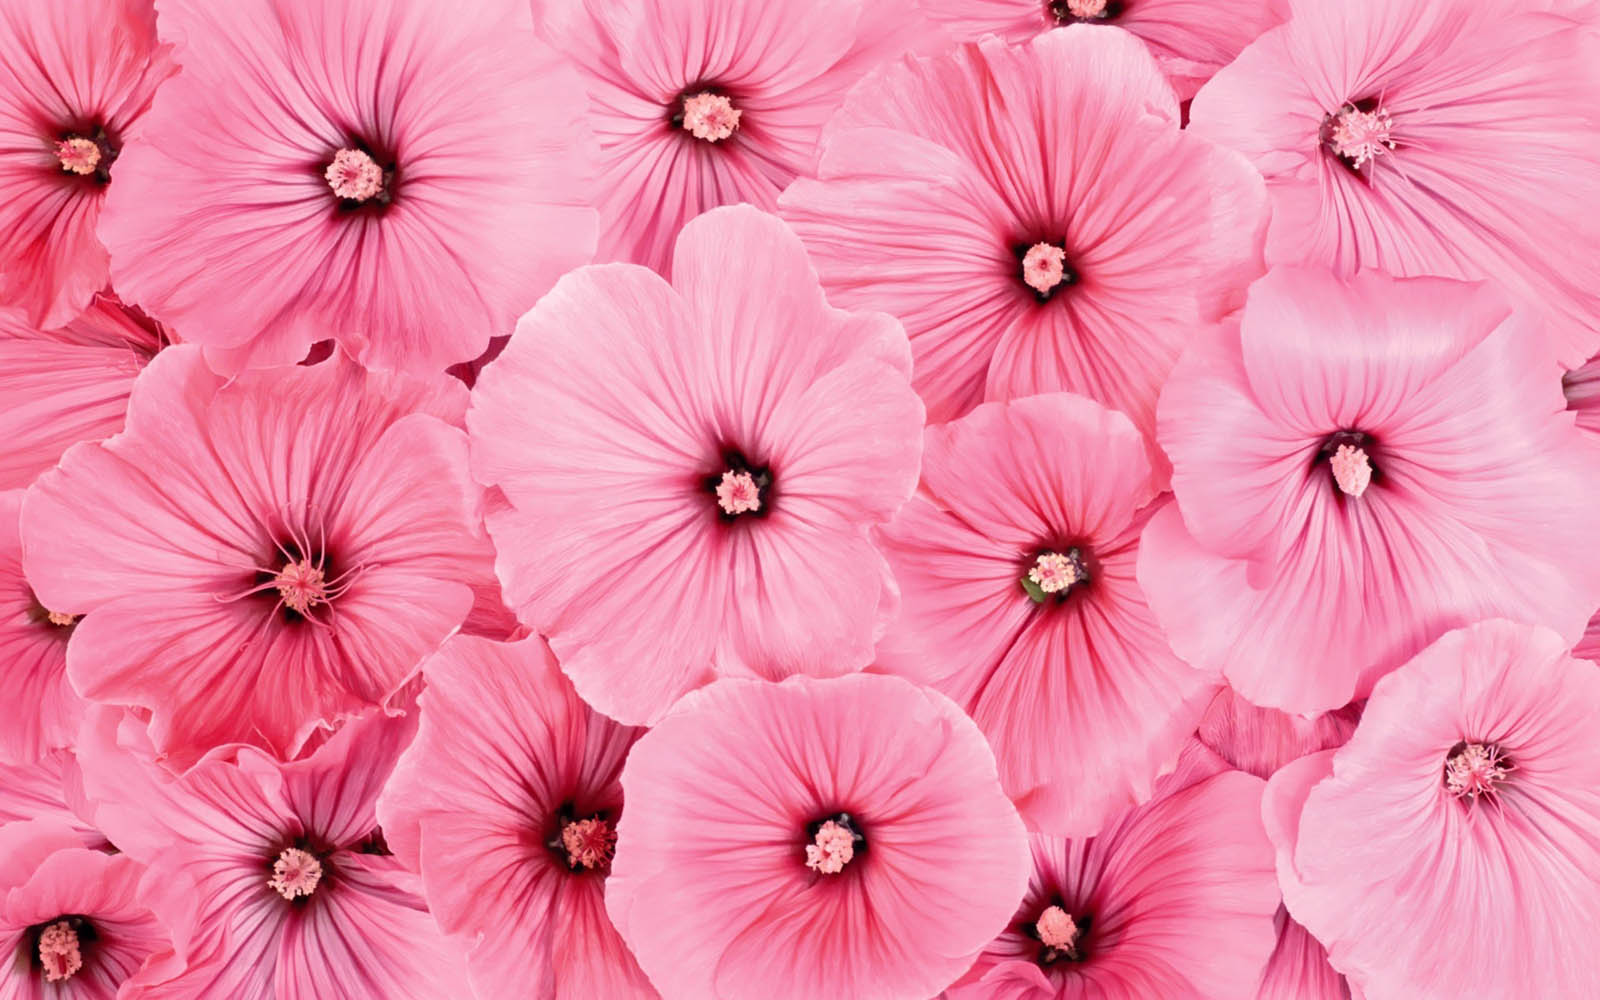  Pink Flowers Wallpapers PinkFlowers Desktop Wallpapers Pink